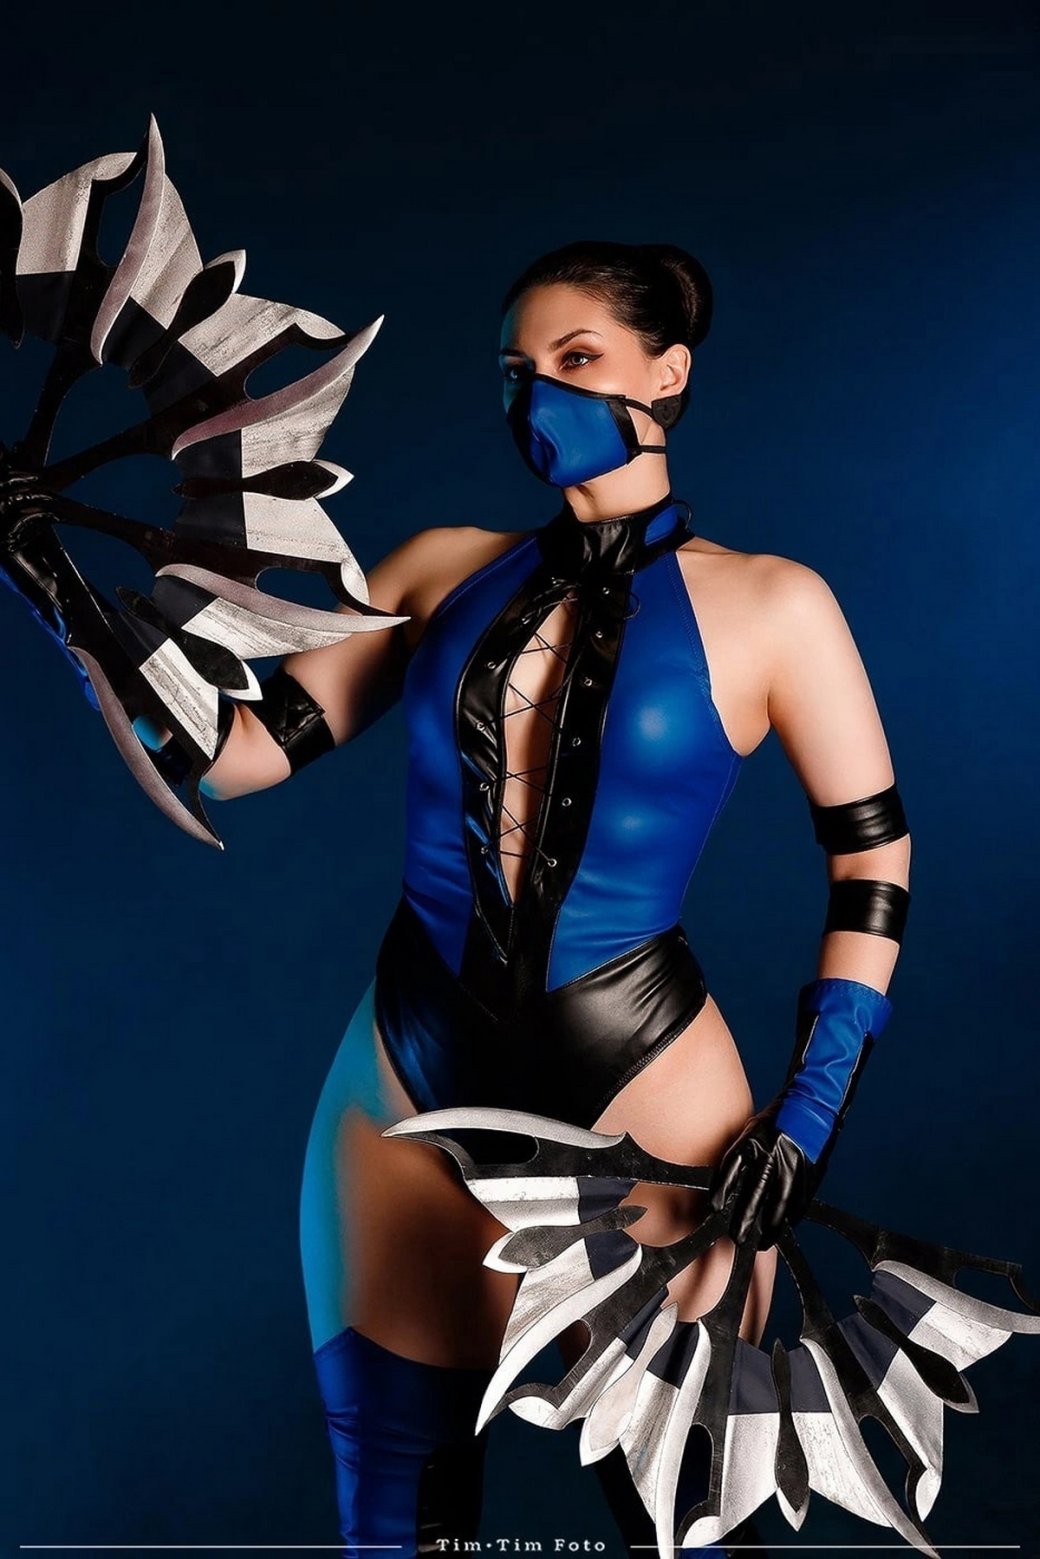 Галерея Модель повторила смелый образ Китаны из Ultimate Mortal Kombat 3 - 6 фото